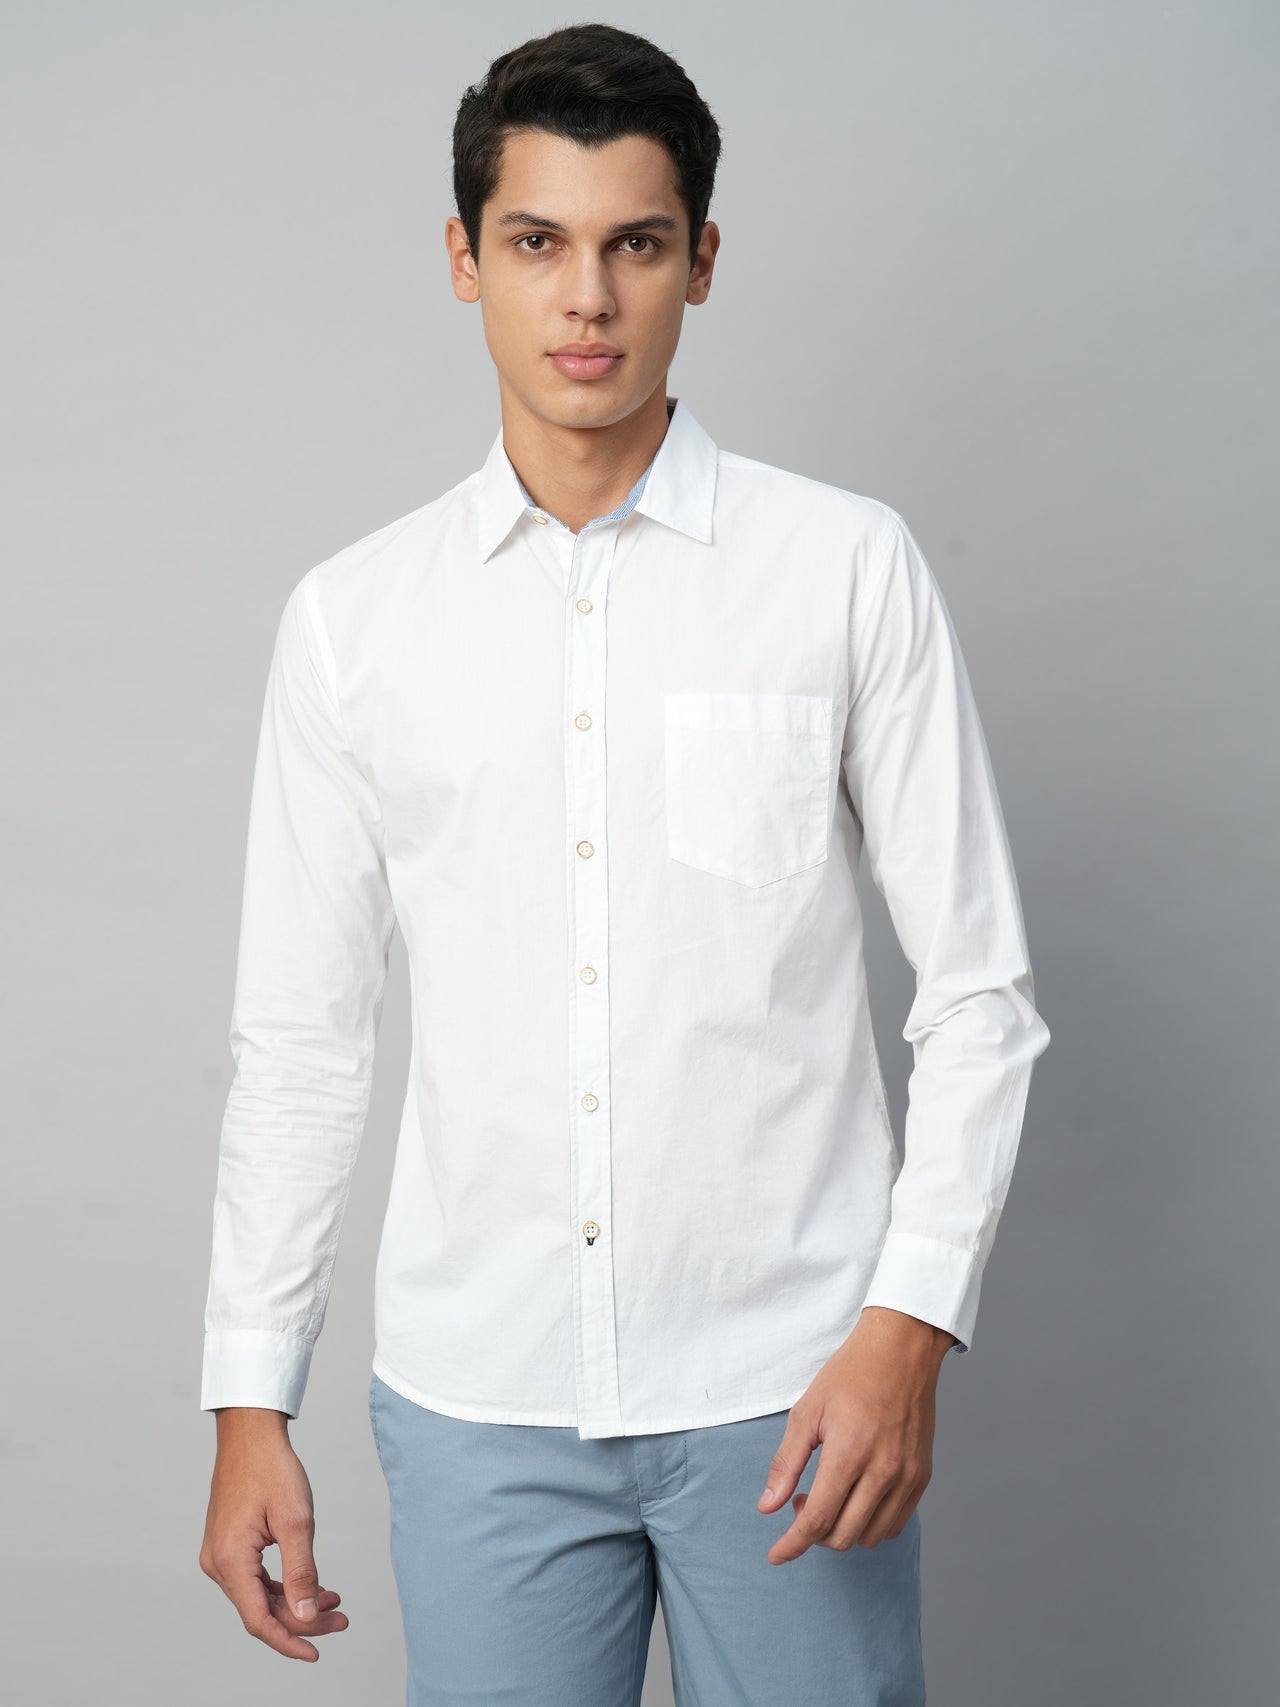 Men's Cotton White Regular Fit Shirts